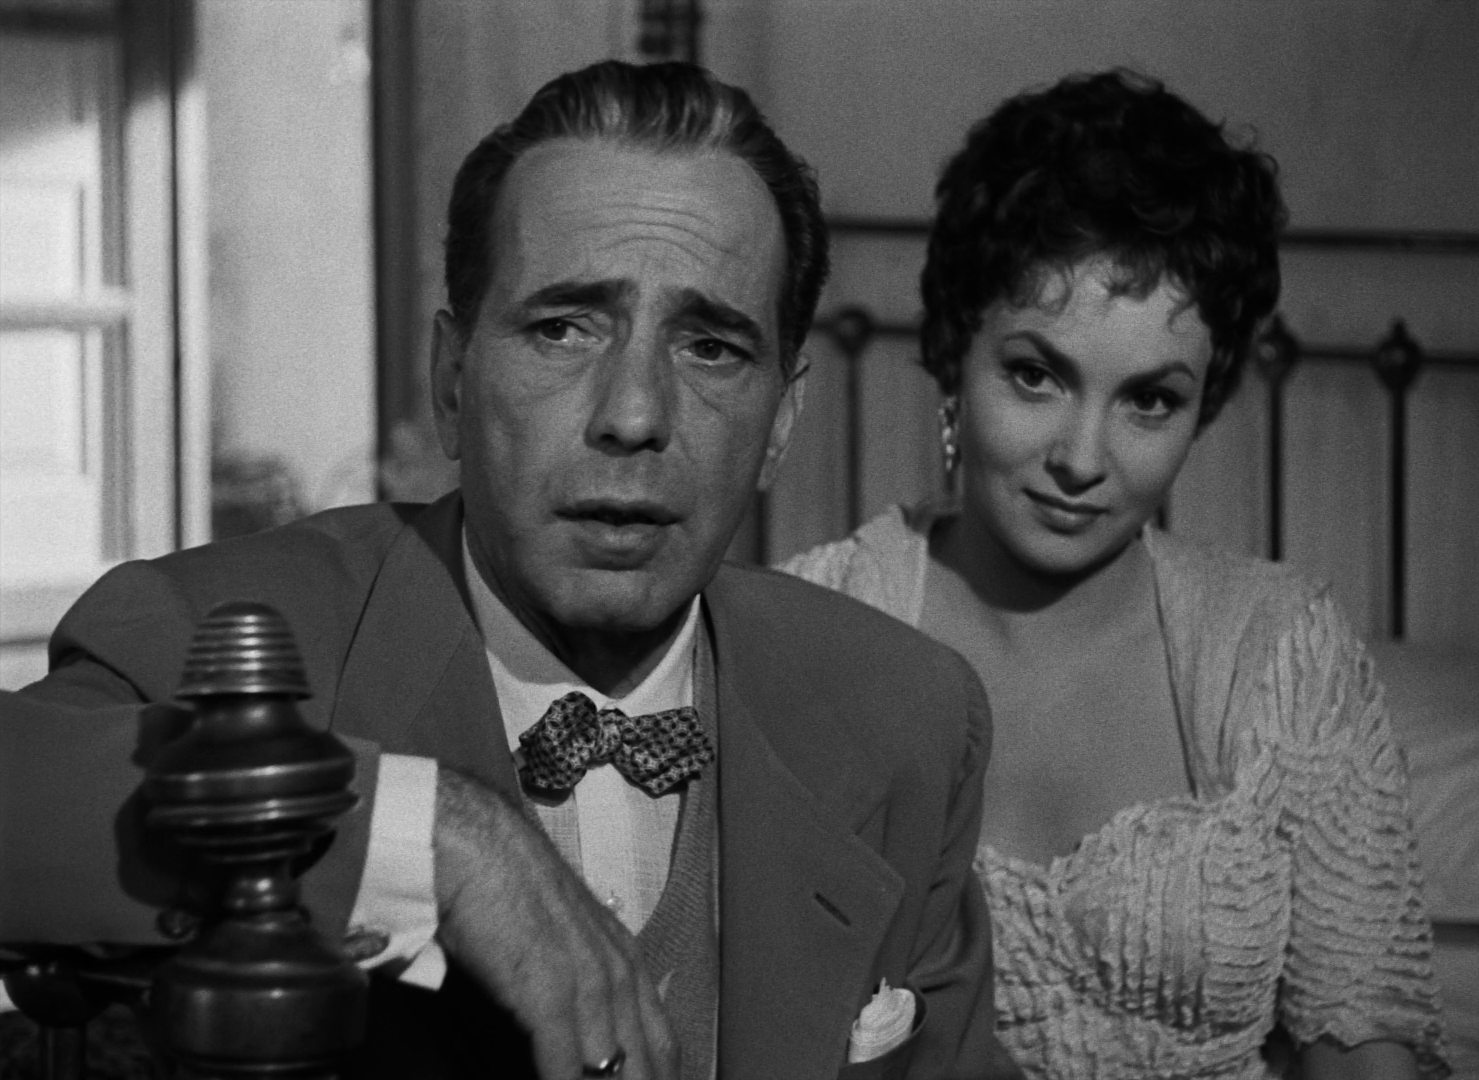 Schwarz-Weiß-Nahaufnahme von Humphrey Bogart und Gina Lollobrigida: Beide sitzen, elegant gekleidet, mit aufmerksamen Blicken auf einem Hotelbett.